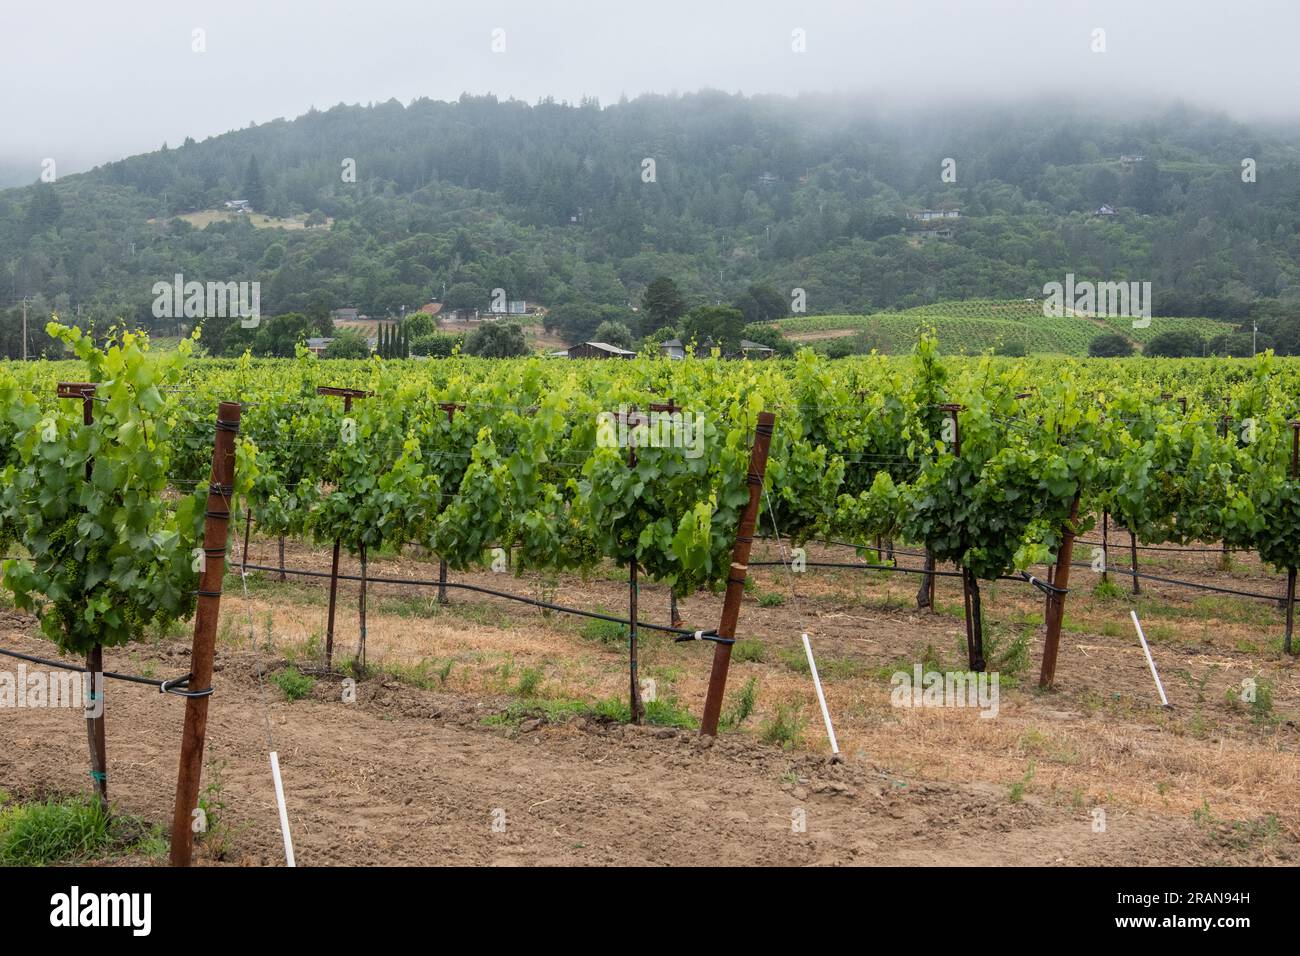 Un vignoble et des raisins destinés à la production de vin dans le comté de Sonoma, en Californie. Un important centre de viticulture en Amérique du Nord. Banque D'Images